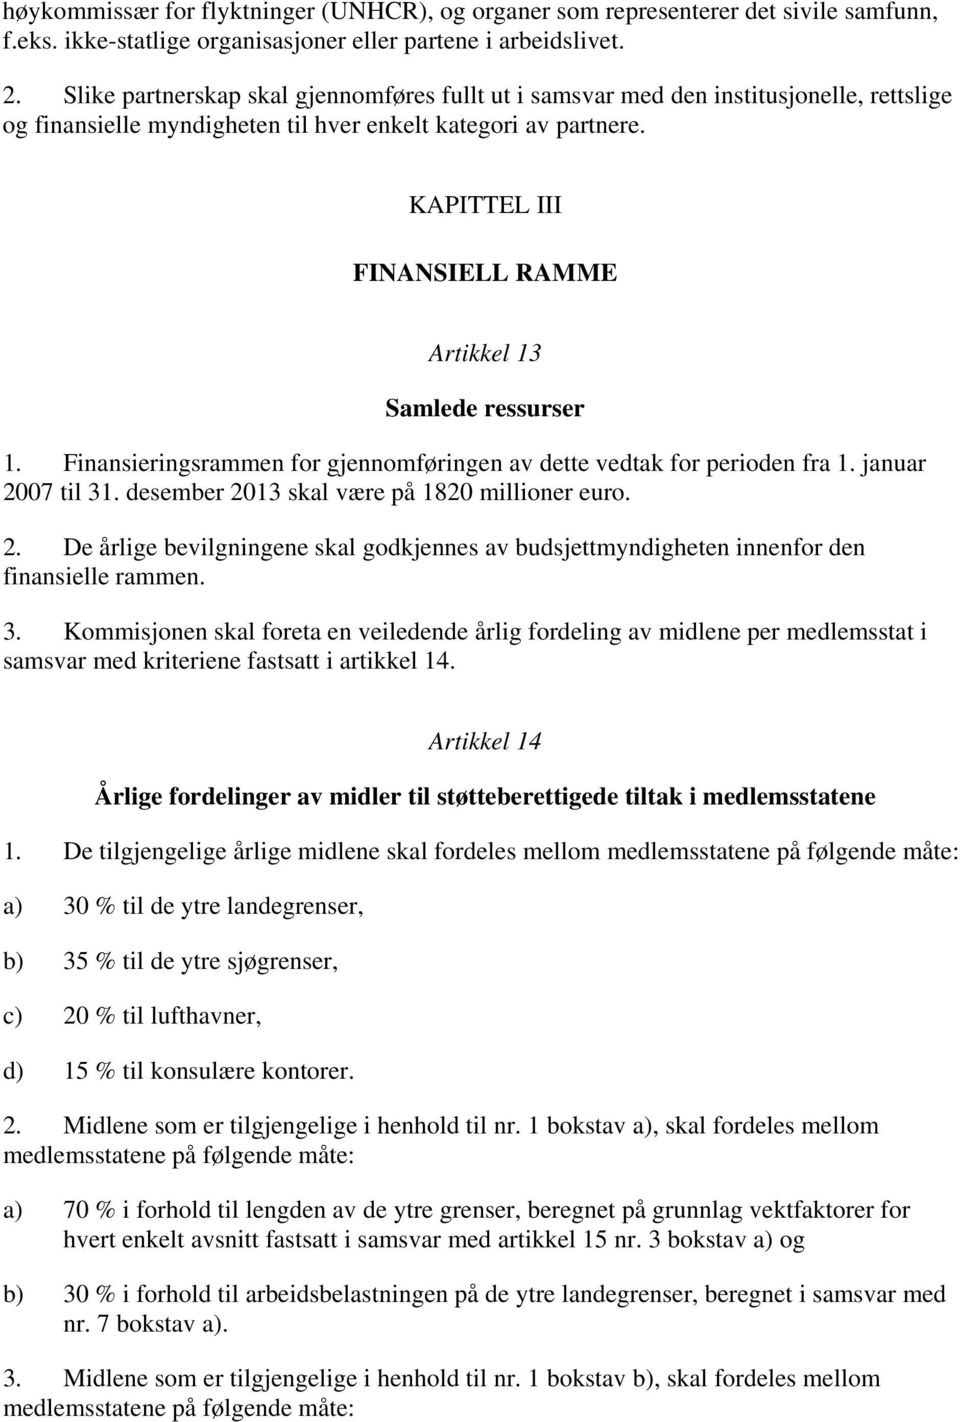 KAPITTEL III FINANSIELL RAMME Artikkel 13 Samlede ressurser 1. Finansieringsrammen for gjennomføringen av dette vedtak for perioden fra 1. januar 2007 til 31.